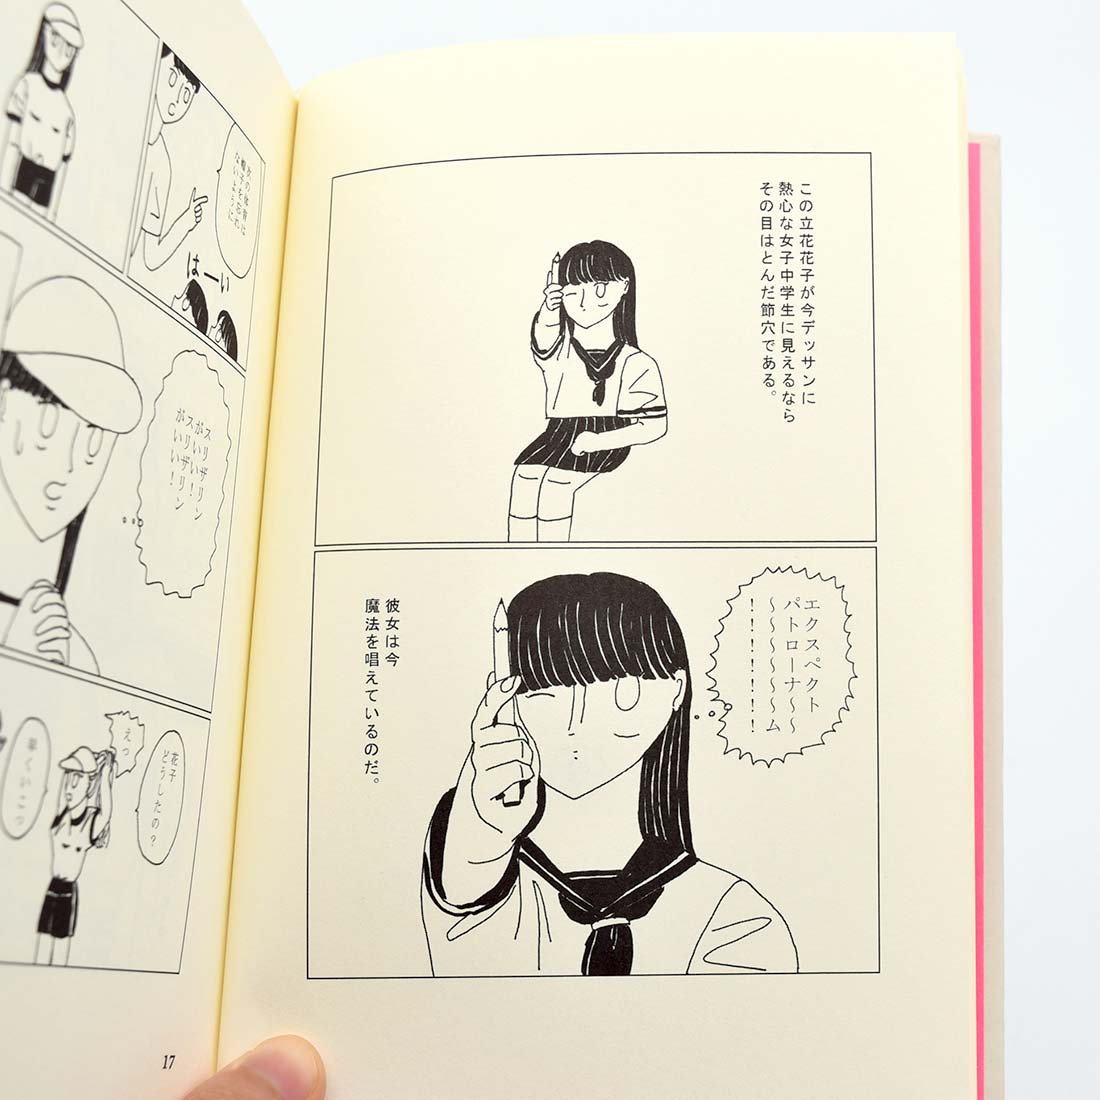 「binder kiken 1 Ayami Konishi」